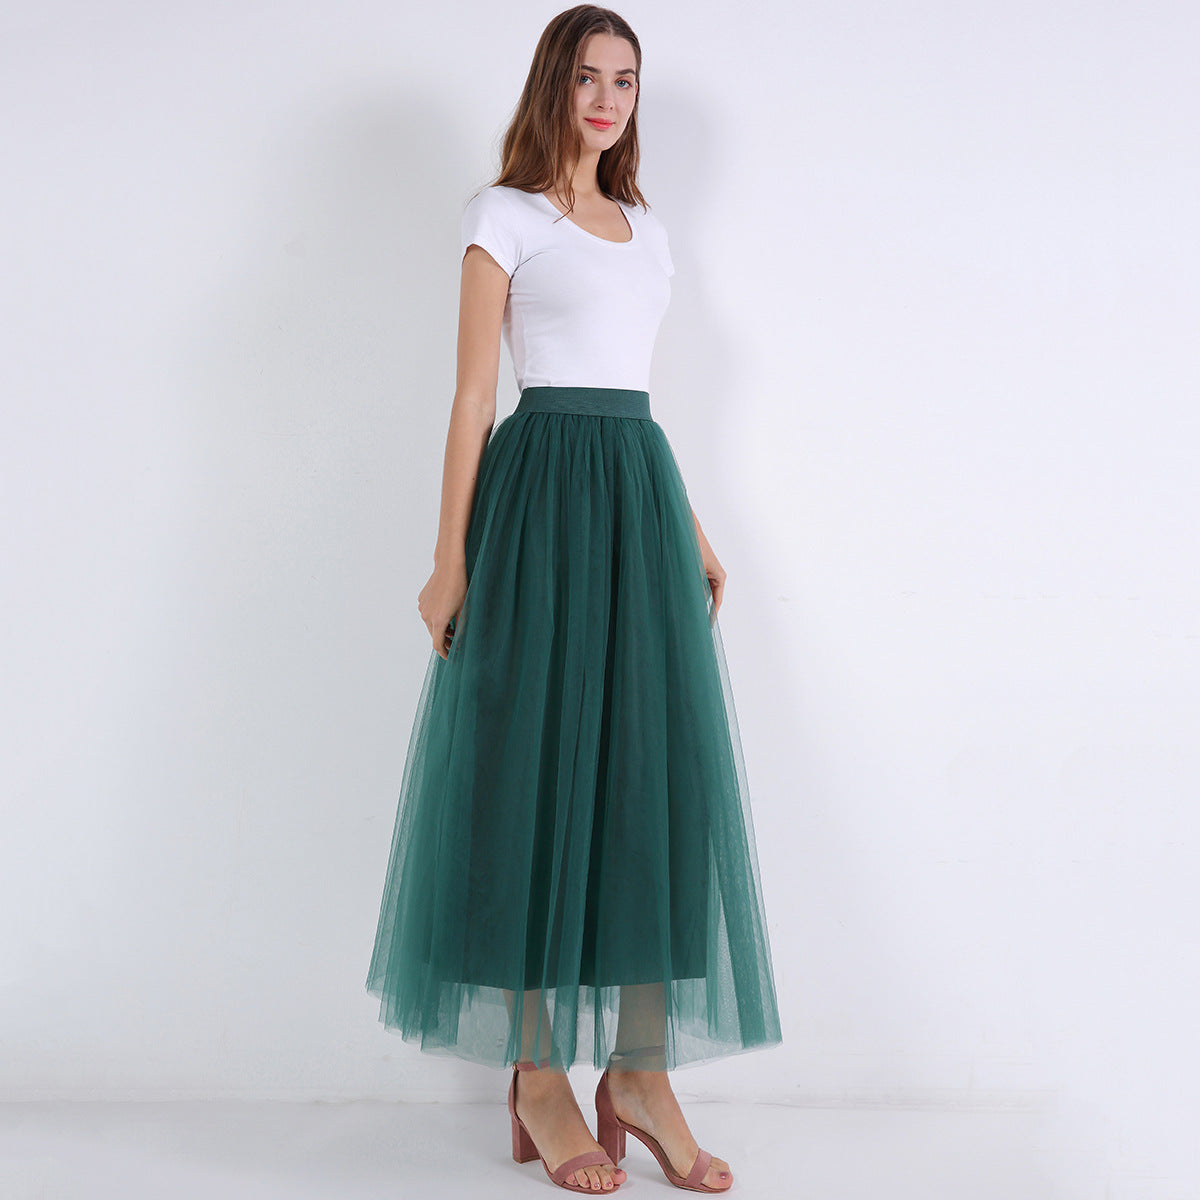 Women 4 Layers 100 Mesh Half-Length Long Skirt Tulle Skirt Gauze Skirt